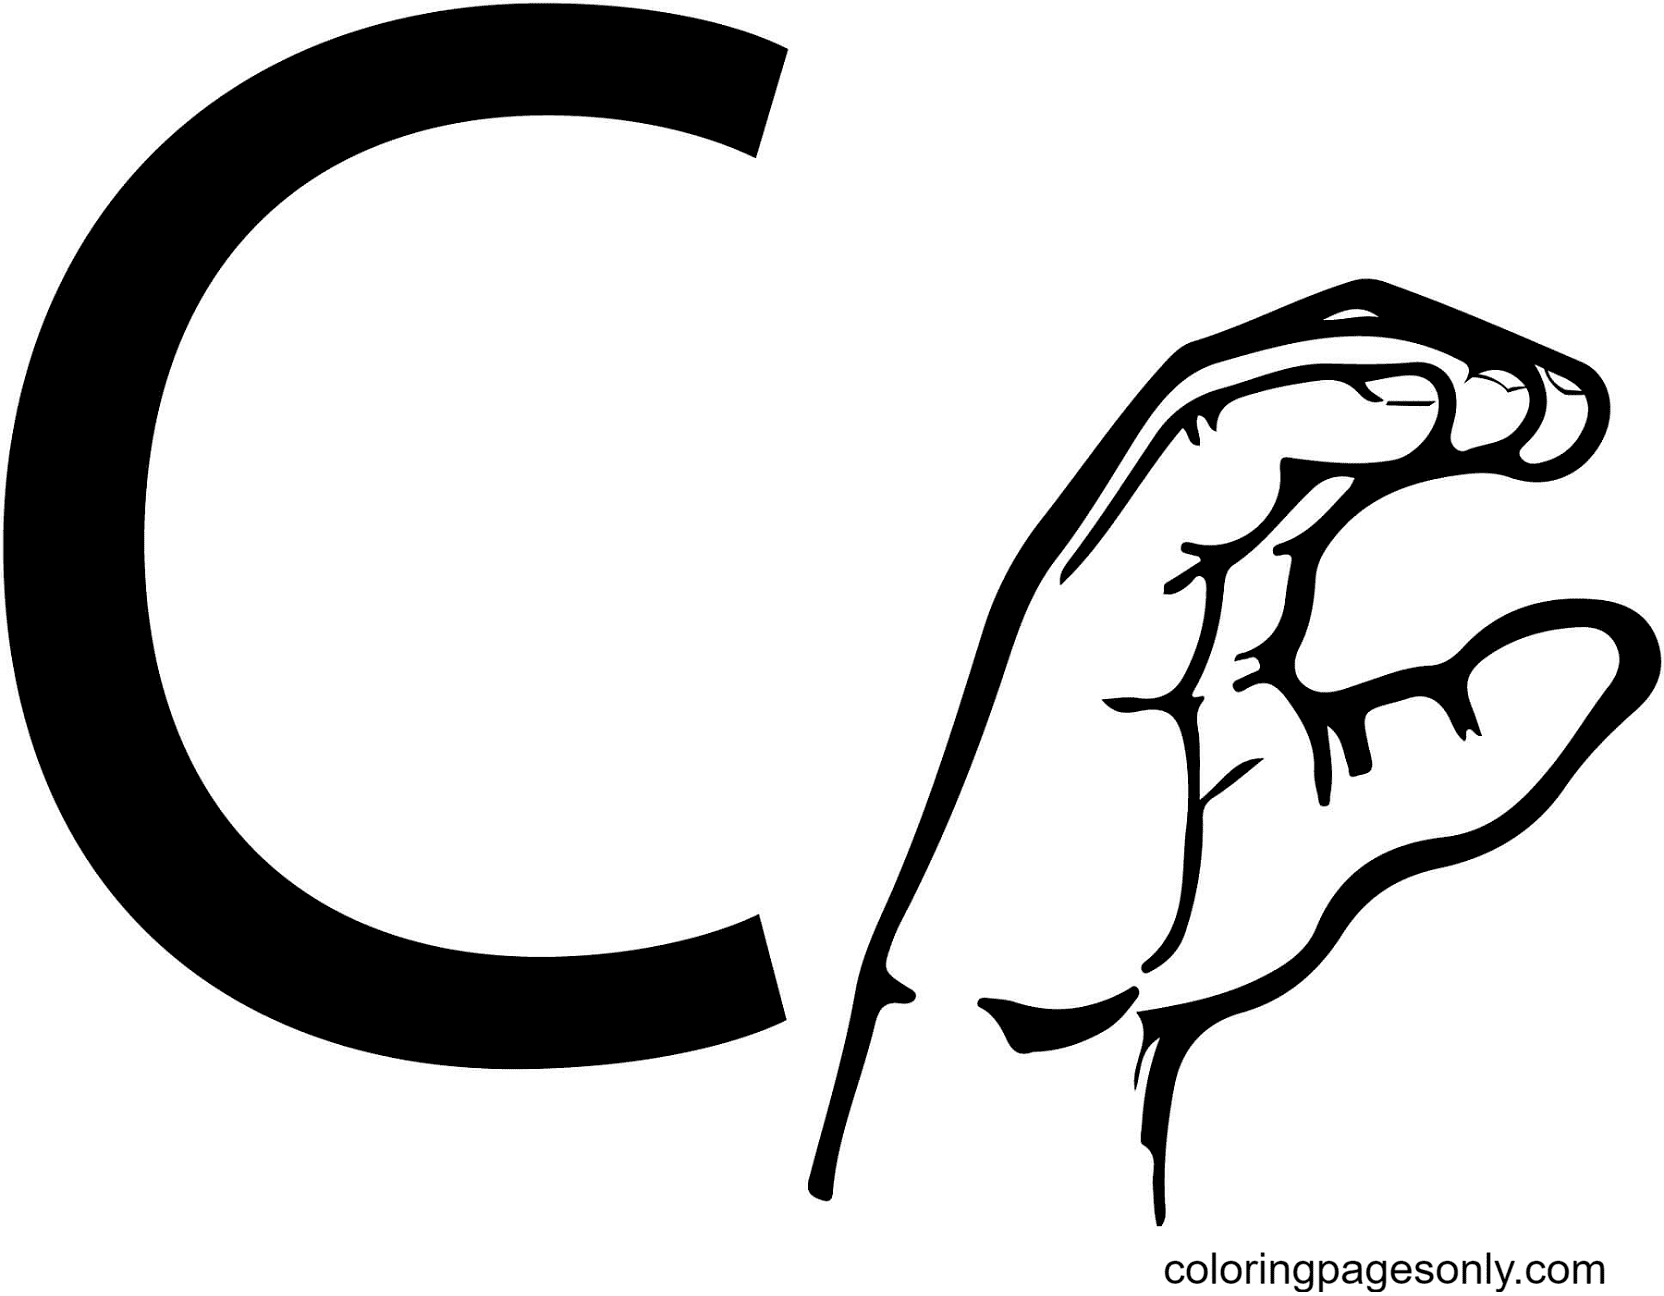 Letra C da linguagem de sinais ASL da letra C